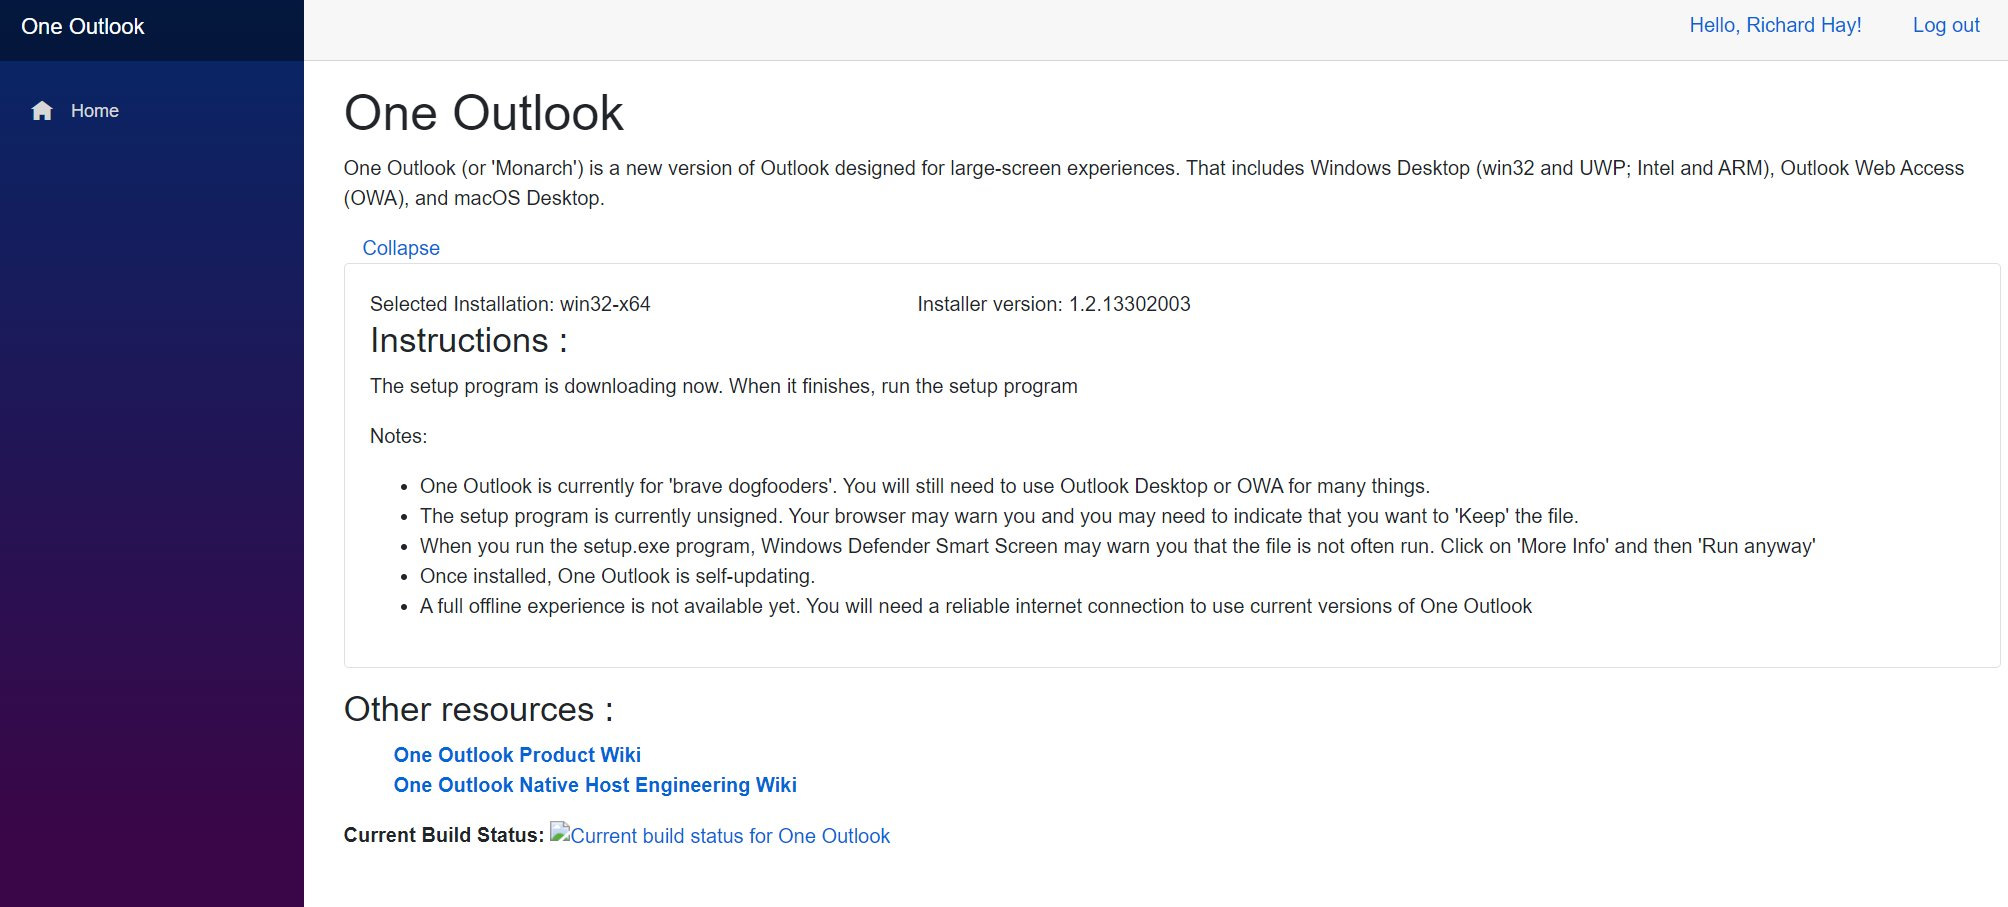 جزئیات اپلیکیشن وان اوت لوک / One Outlook مایکروسافت